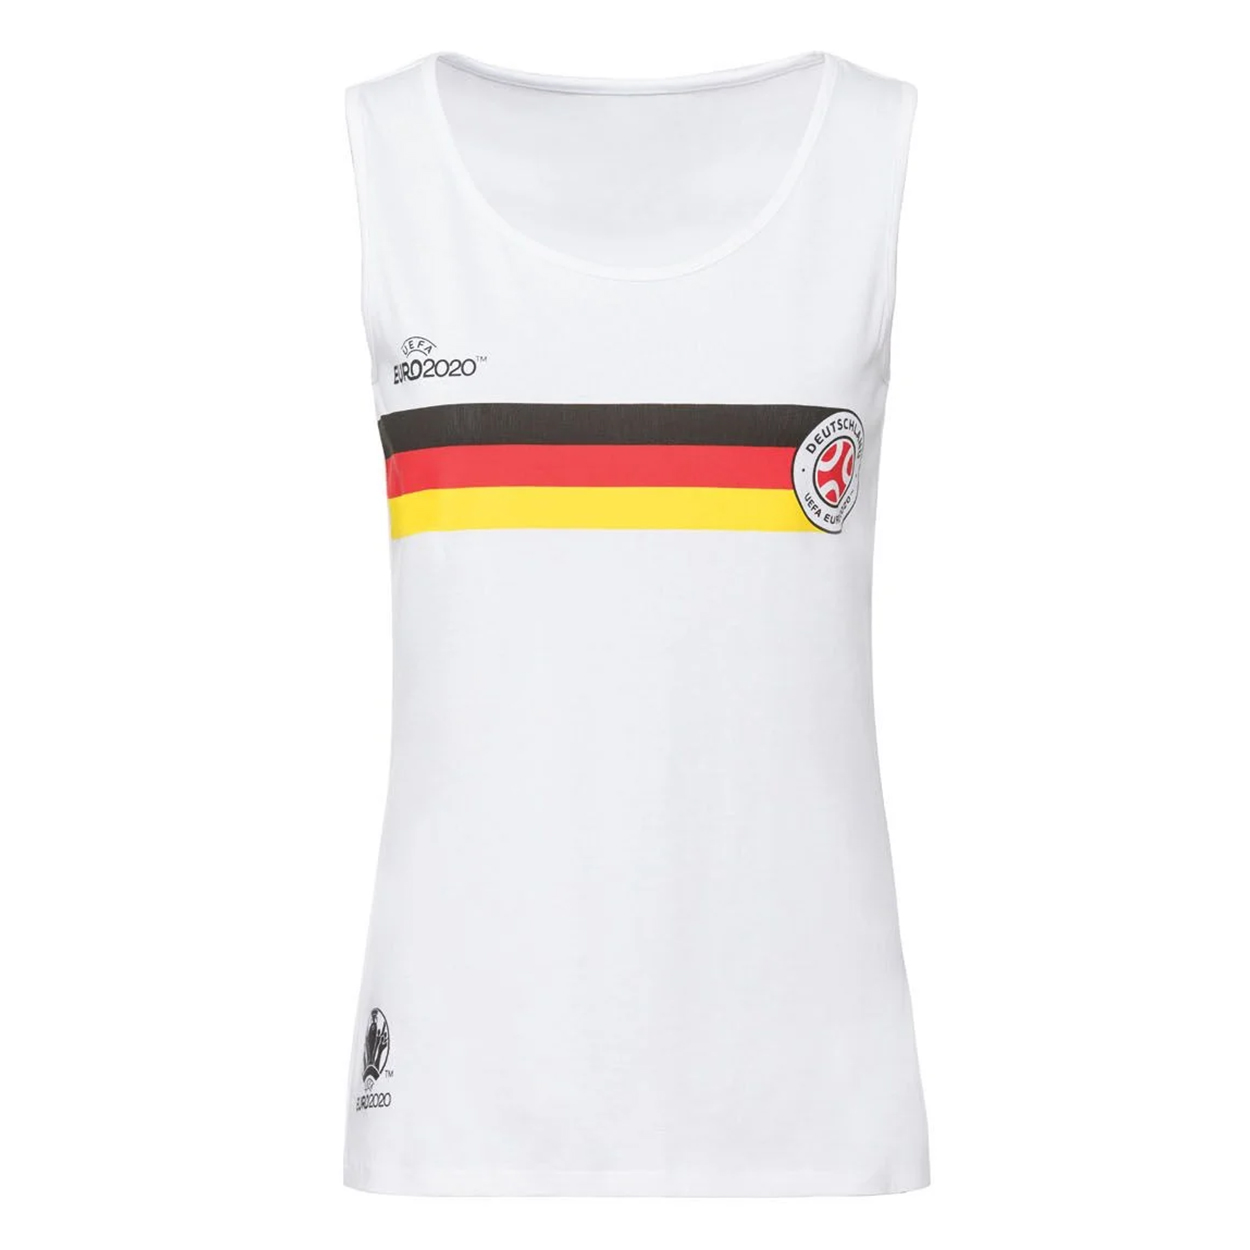 نکته خرید - قیمت روز تاپ ورزشی زنانه یوفا یورو 2020 مدل باشگاه آلمان کد AK-01-044 خرید